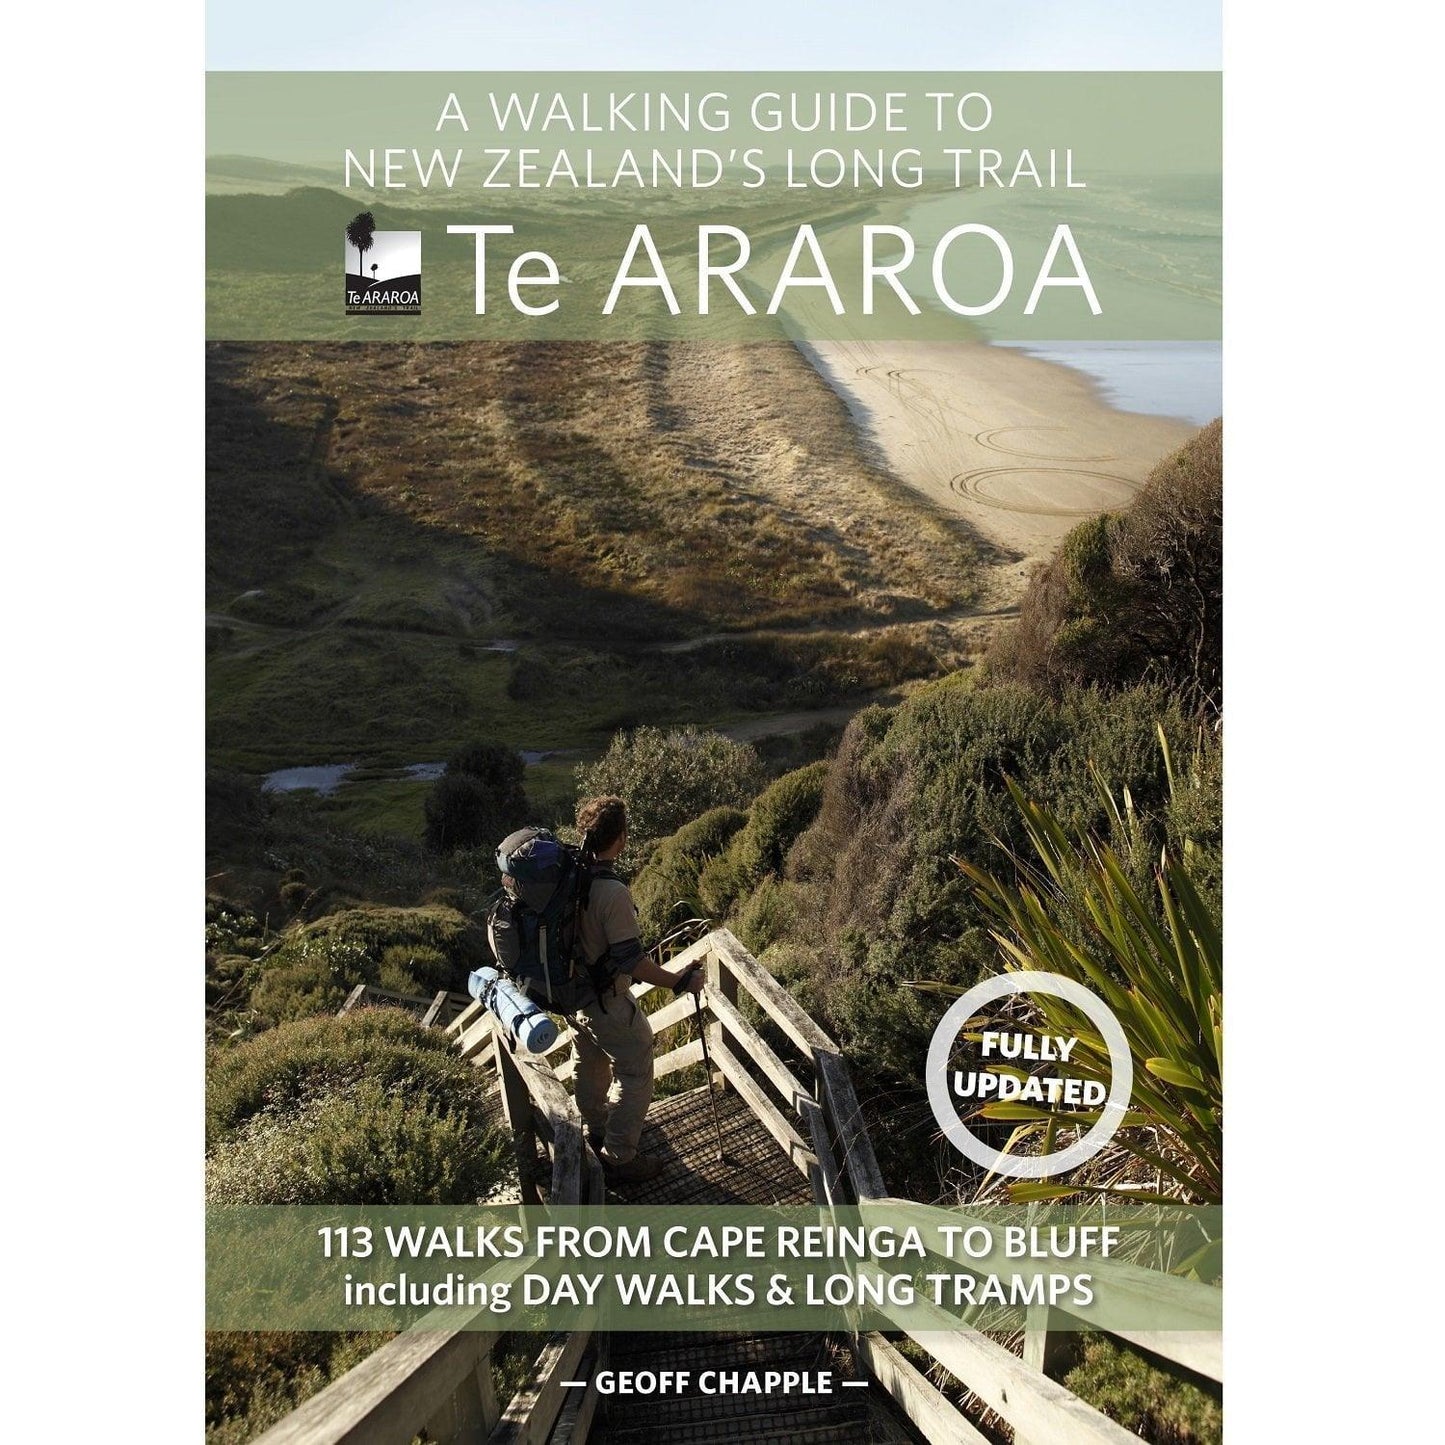 Te Araroa A Walking Guide to New Zealand's Long Trail book.